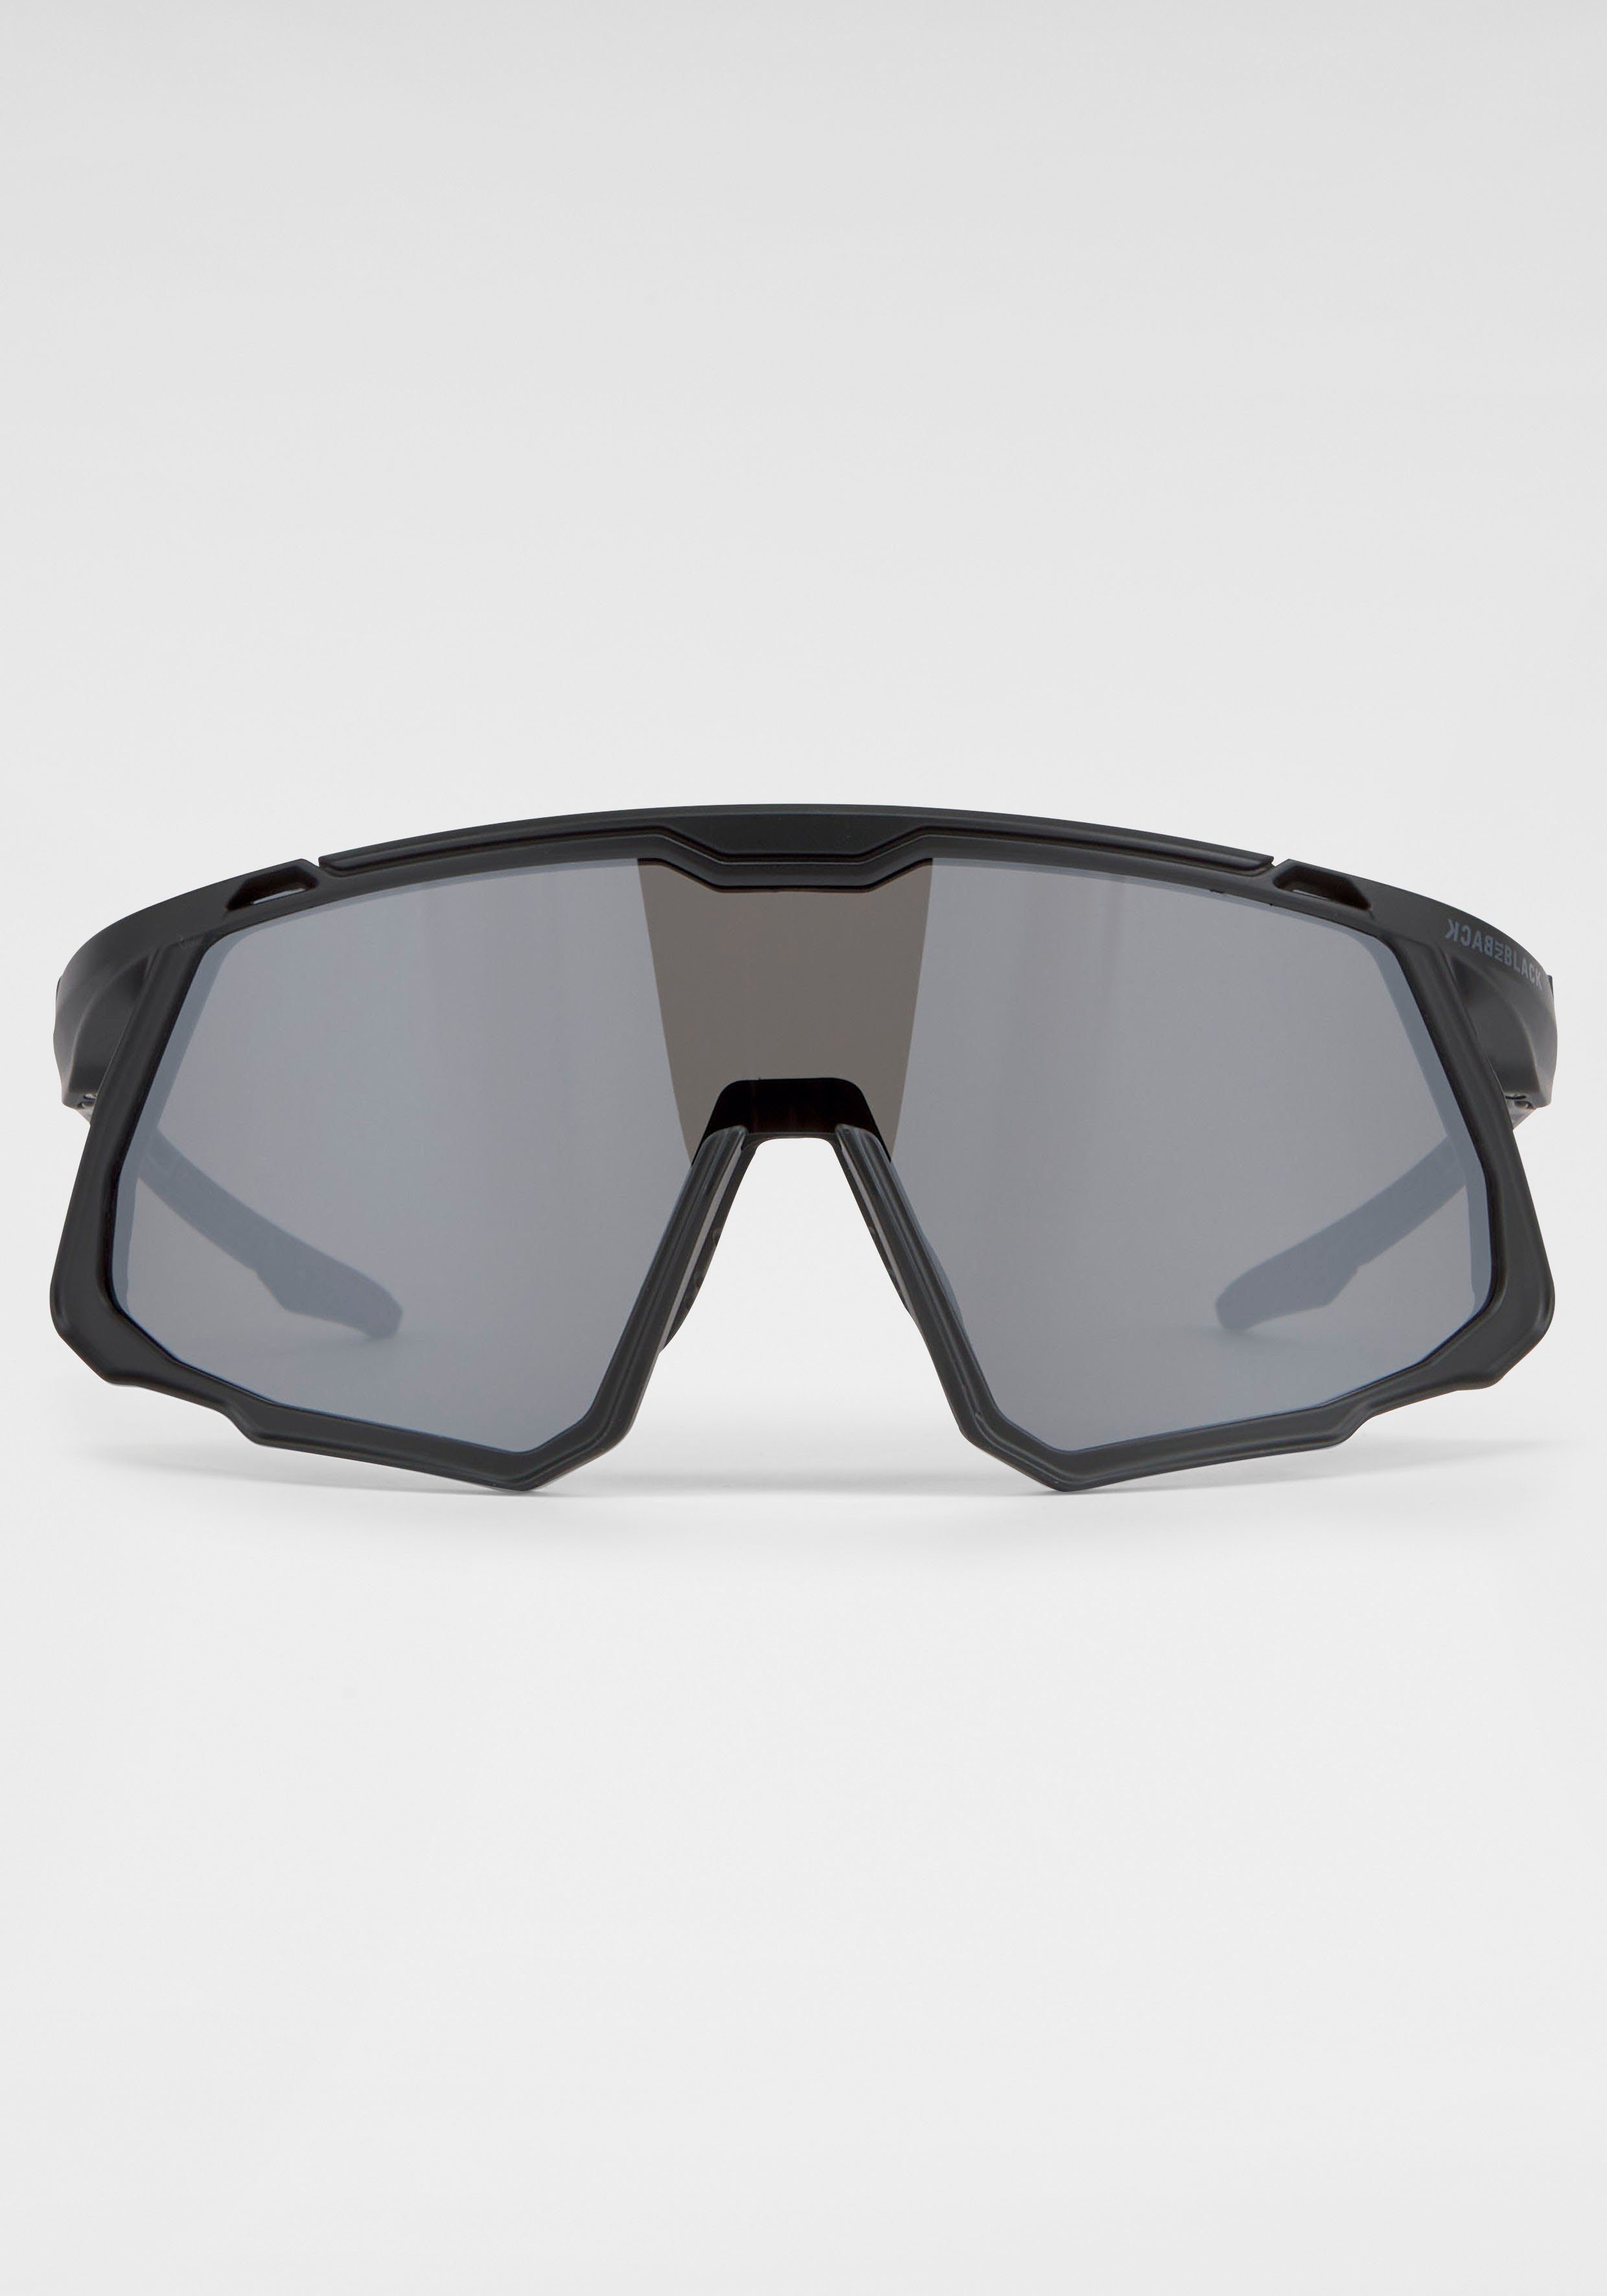 BACK IN BLACK Eyewear Sonnenbrille gebogene Form schwarz | Sonnenbrillen